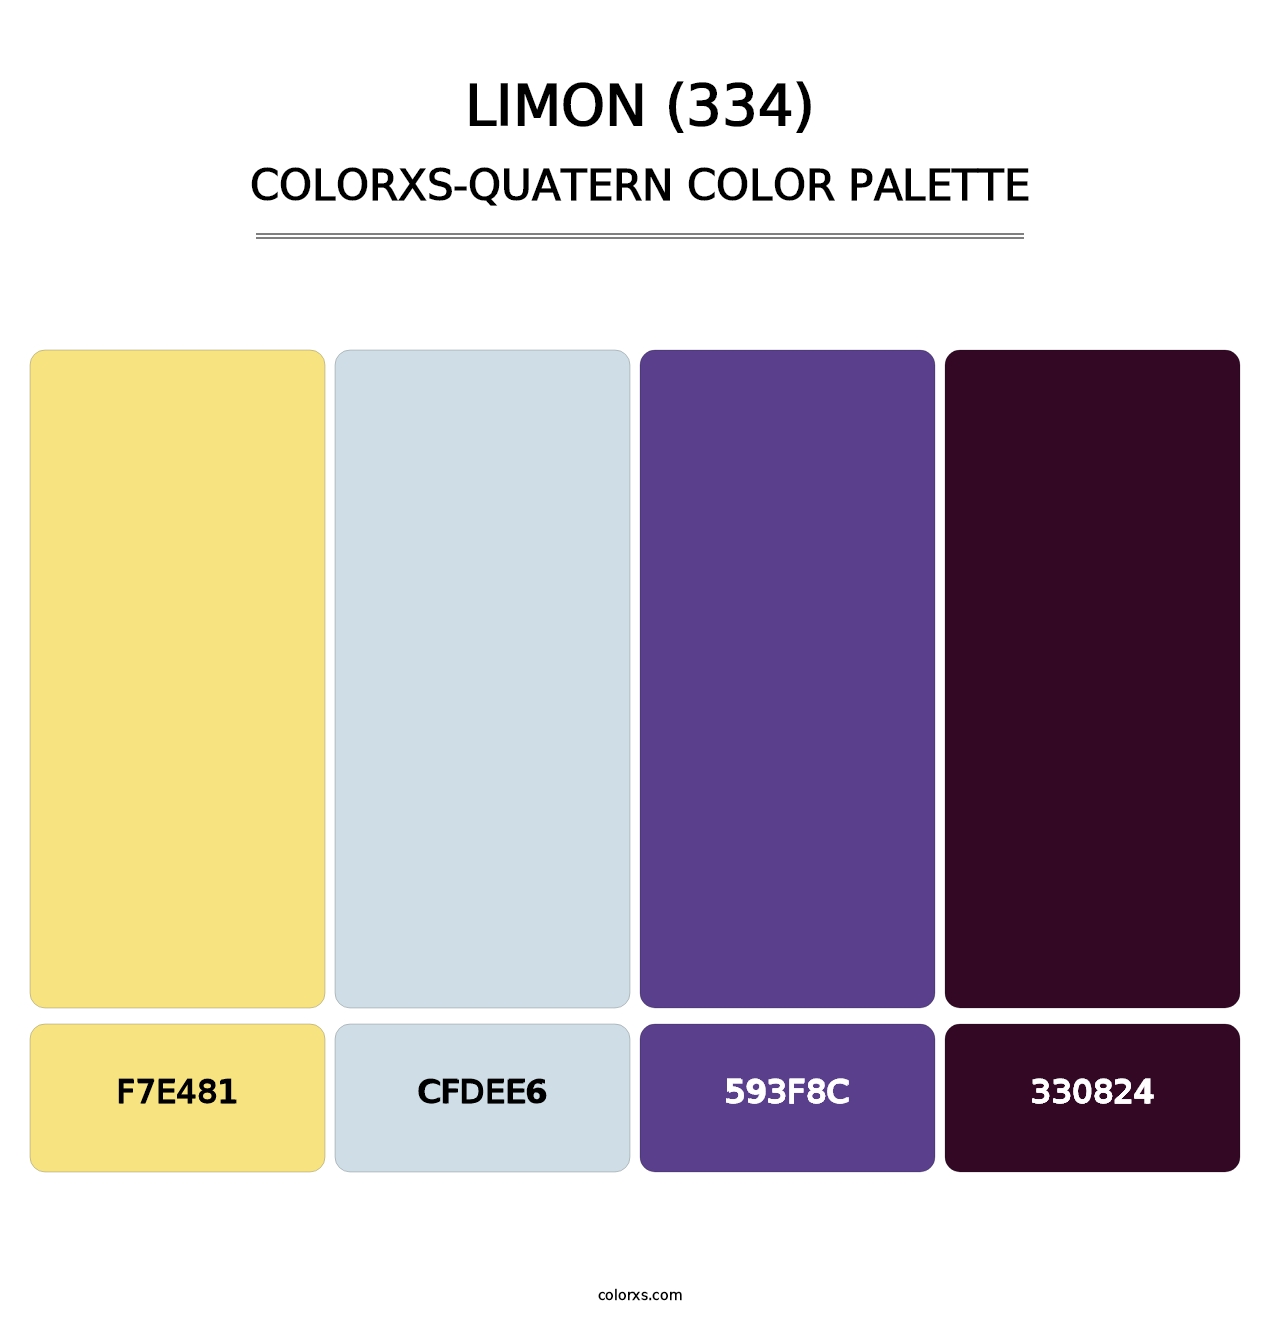 Limon (334) - Colorxs Quatern Palette